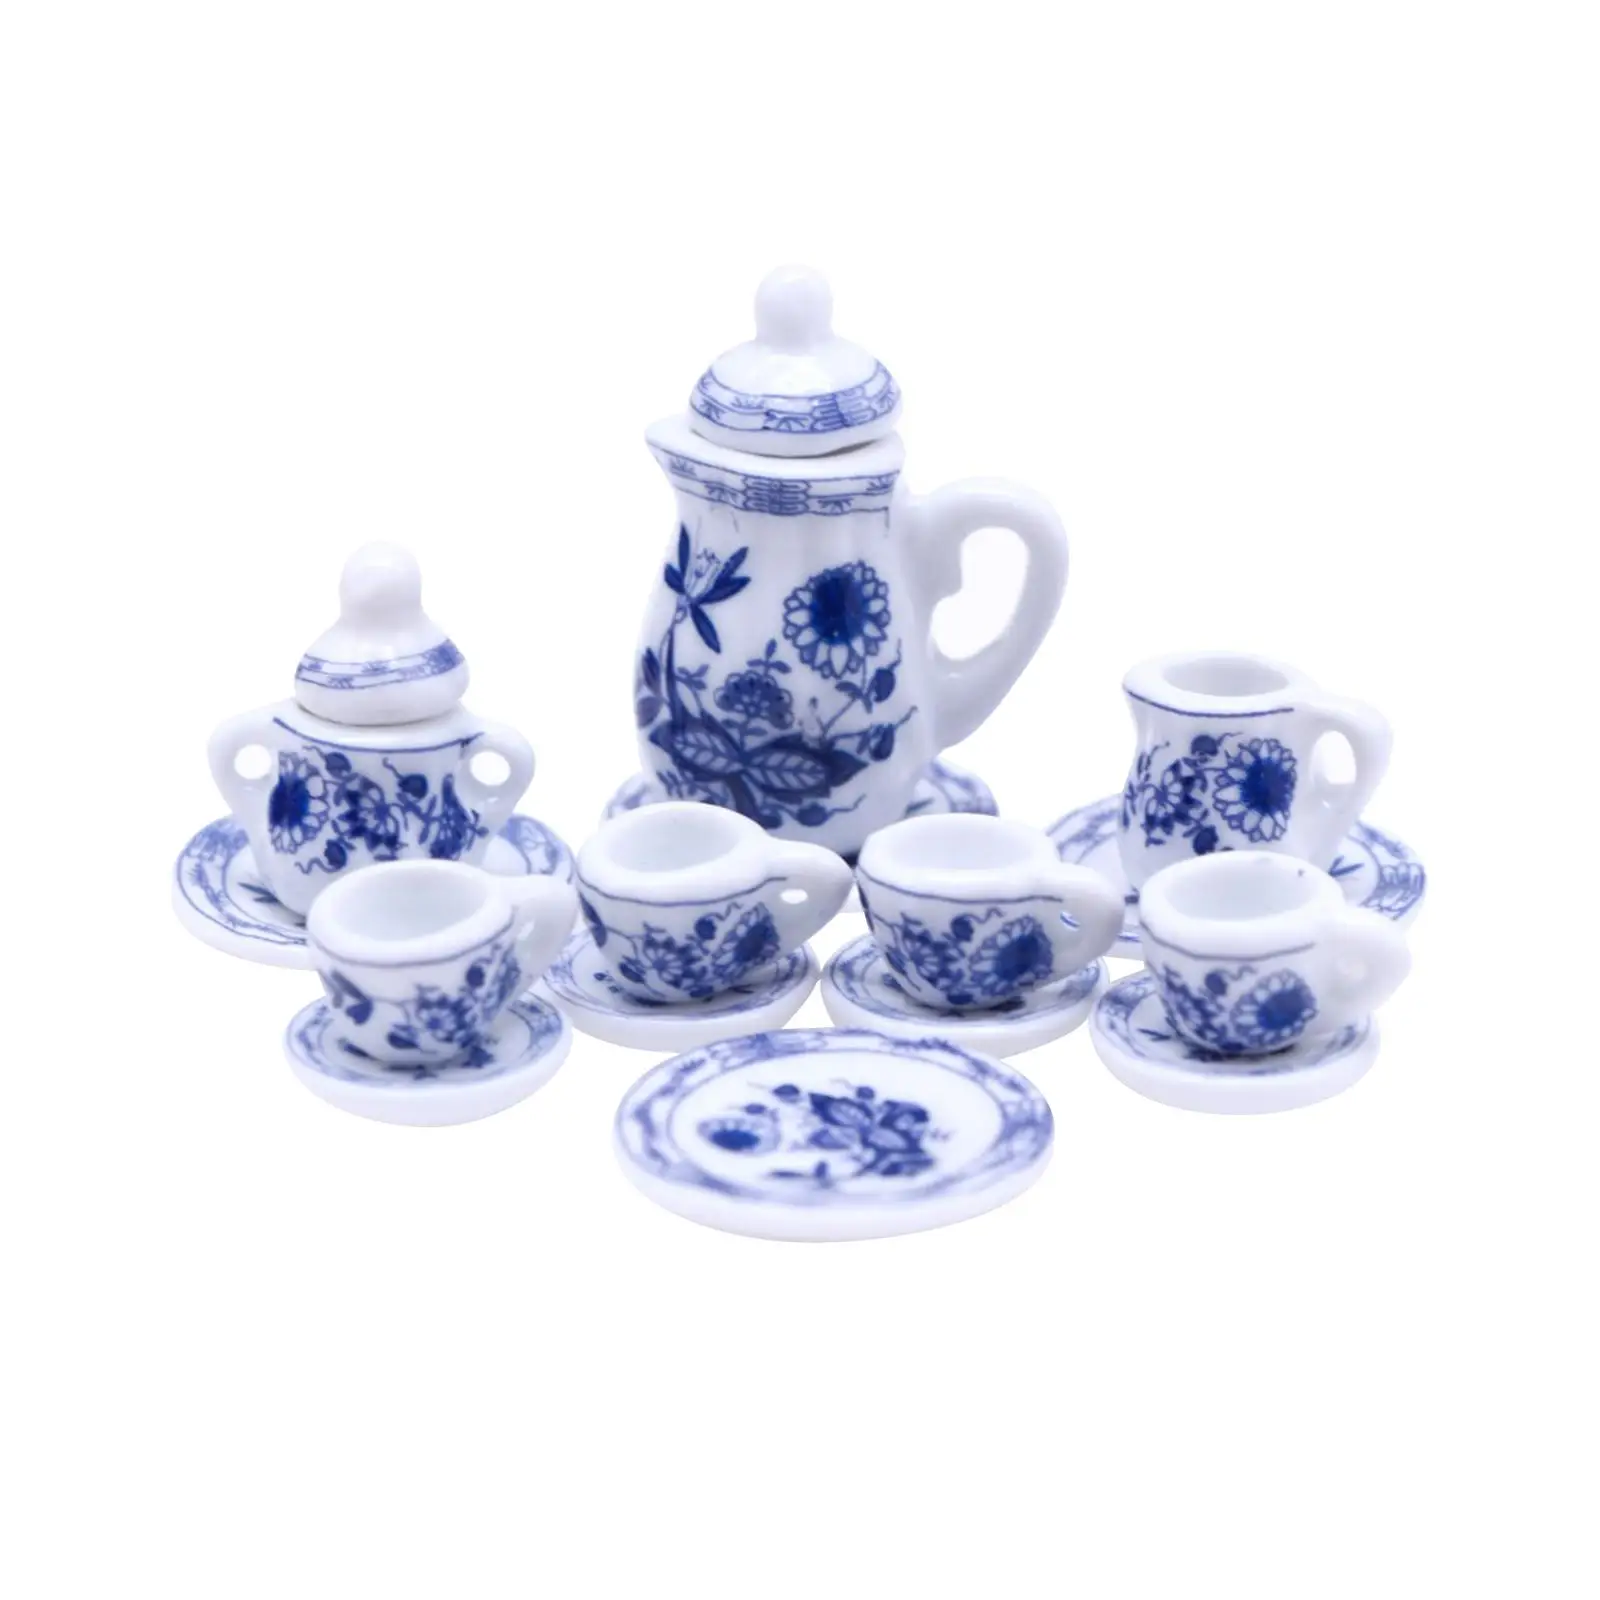 15Pcs 1:12 Dollhouse Miniature Teapot Cup Tea Set Miniature Set for Kitchen